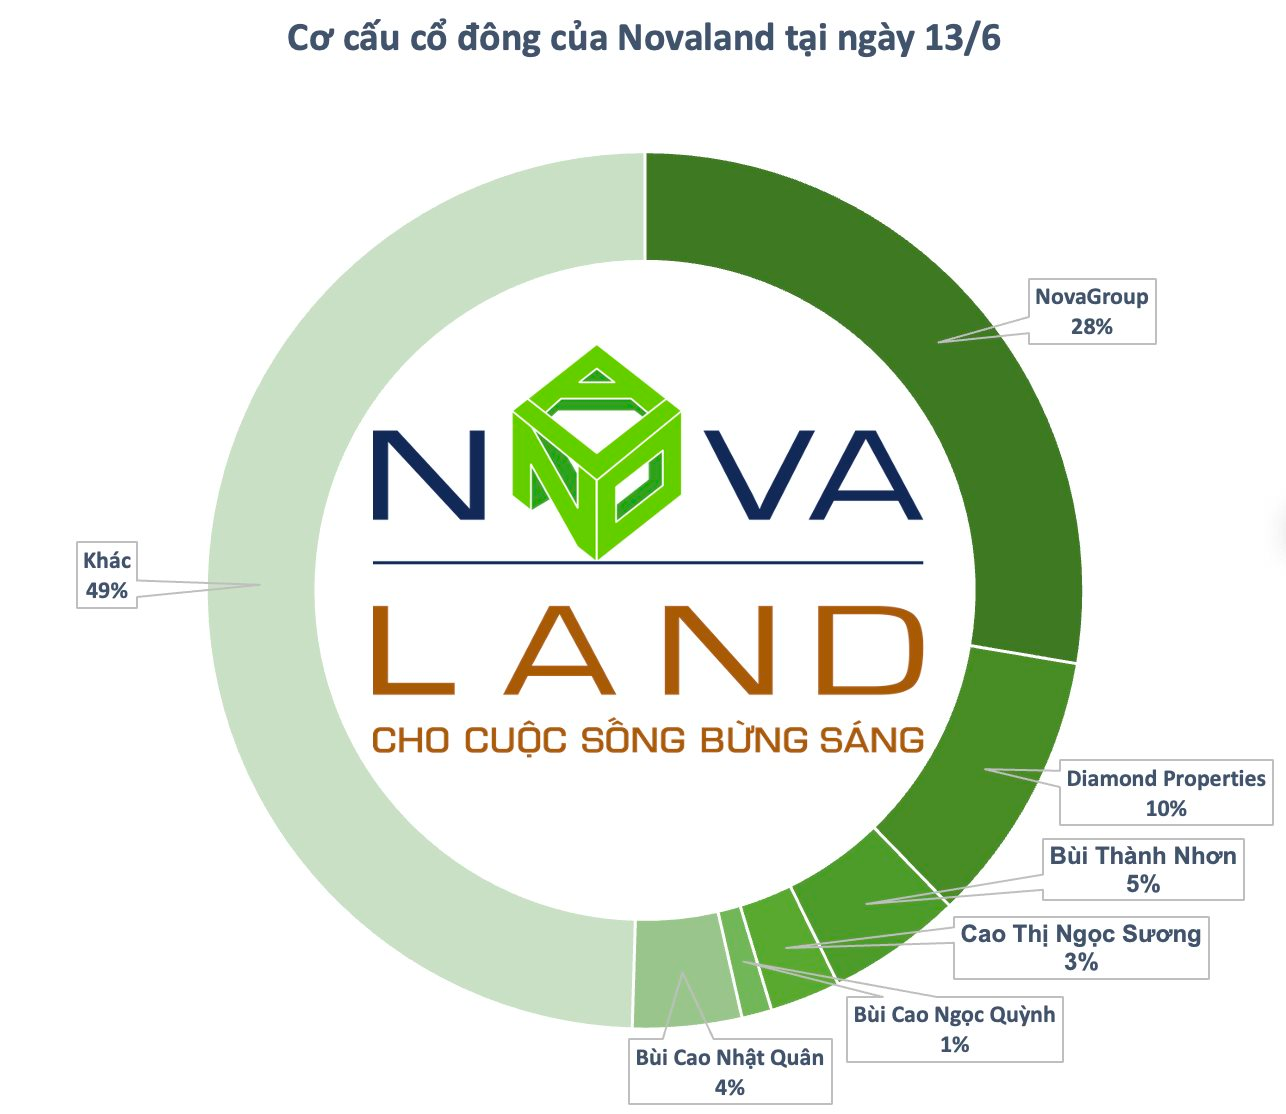 NovaGroup đăng ký bán hơn 136 triệu cổ phiếu NVL, nhóm cổ đông liên quan đến ông Bùi Thành Nhơn sẽ giảm tỷ lệ sở hữu tại Novaland xuống dưới 49% - Ảnh 1.